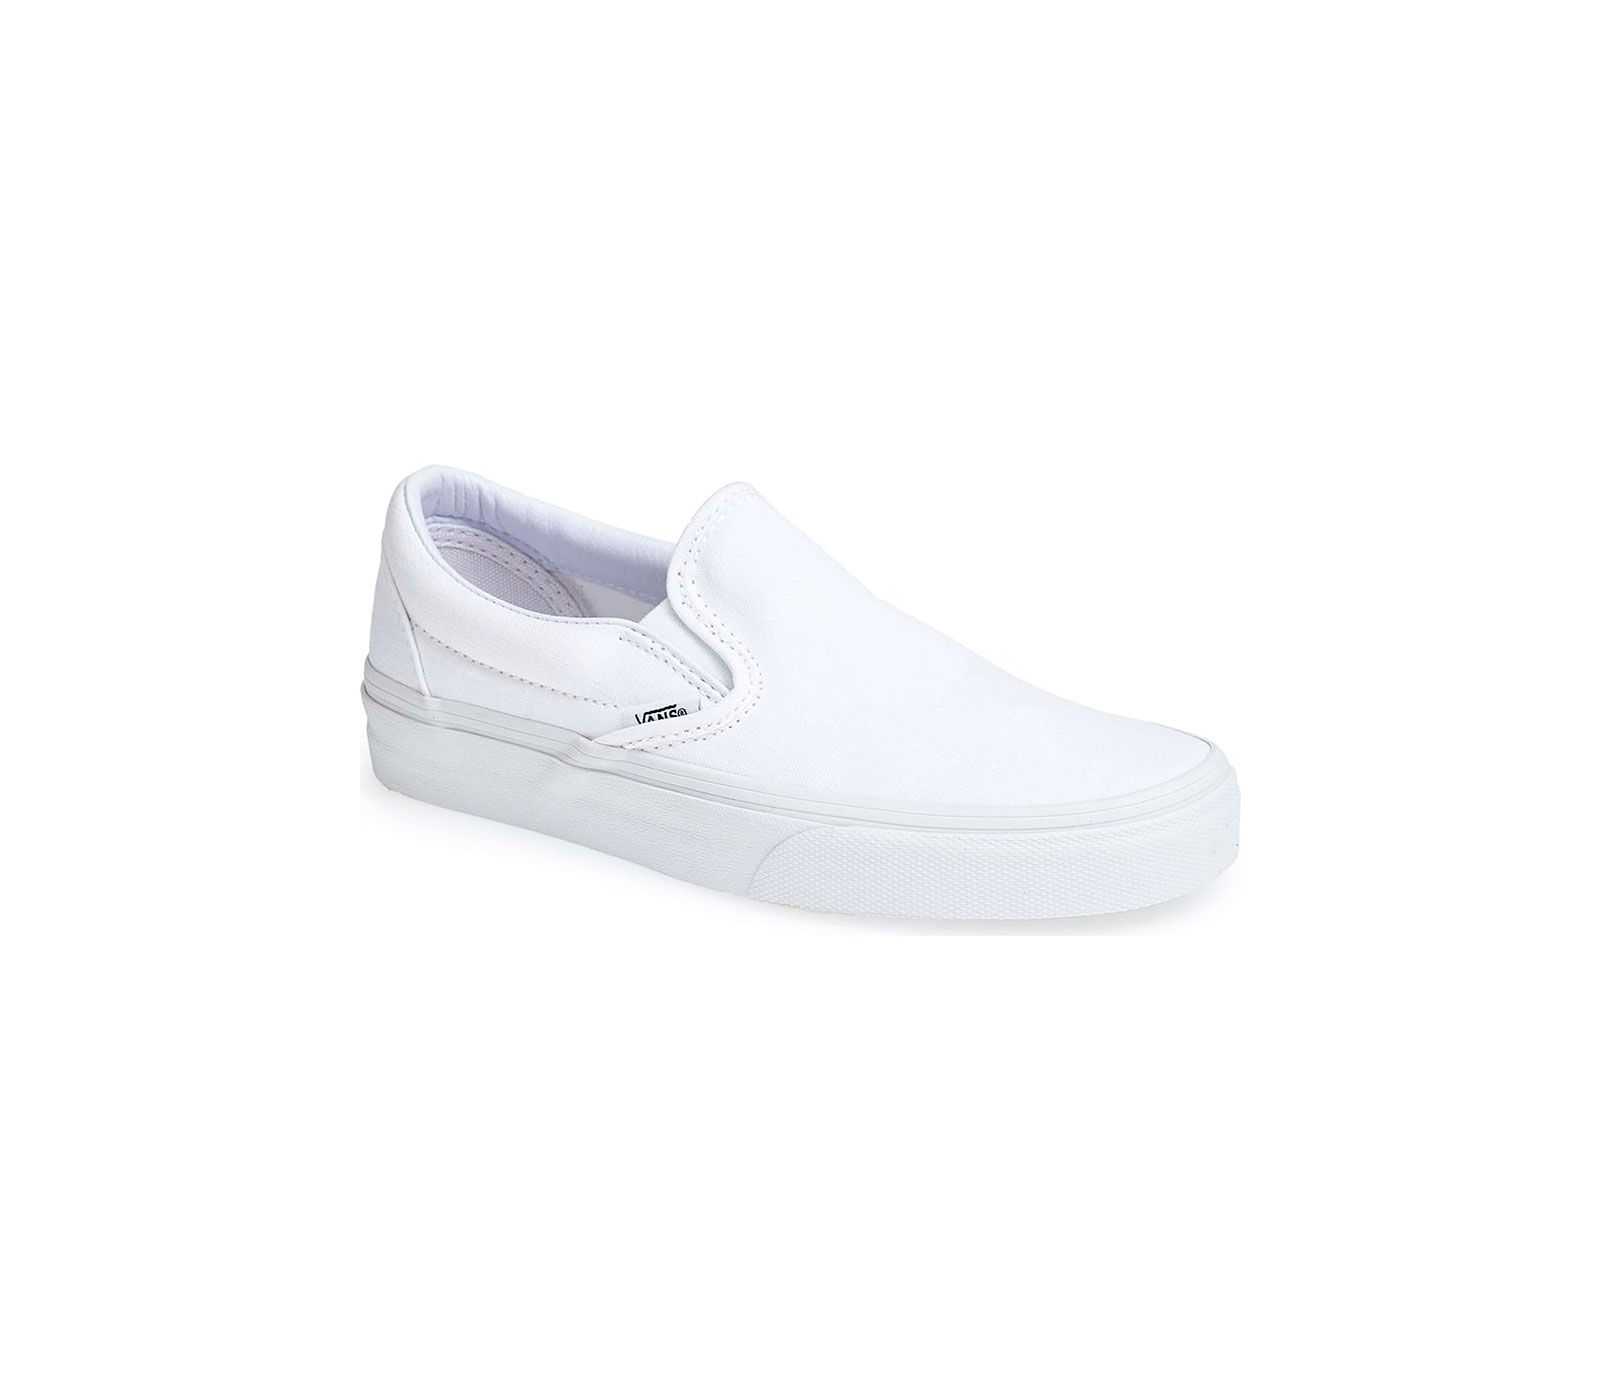 7 ელეგანტური თეთრი სპორტული ფეხსაცმელი, რომლებიც გსურთ ატაროთ ყველაფერთან ერთად